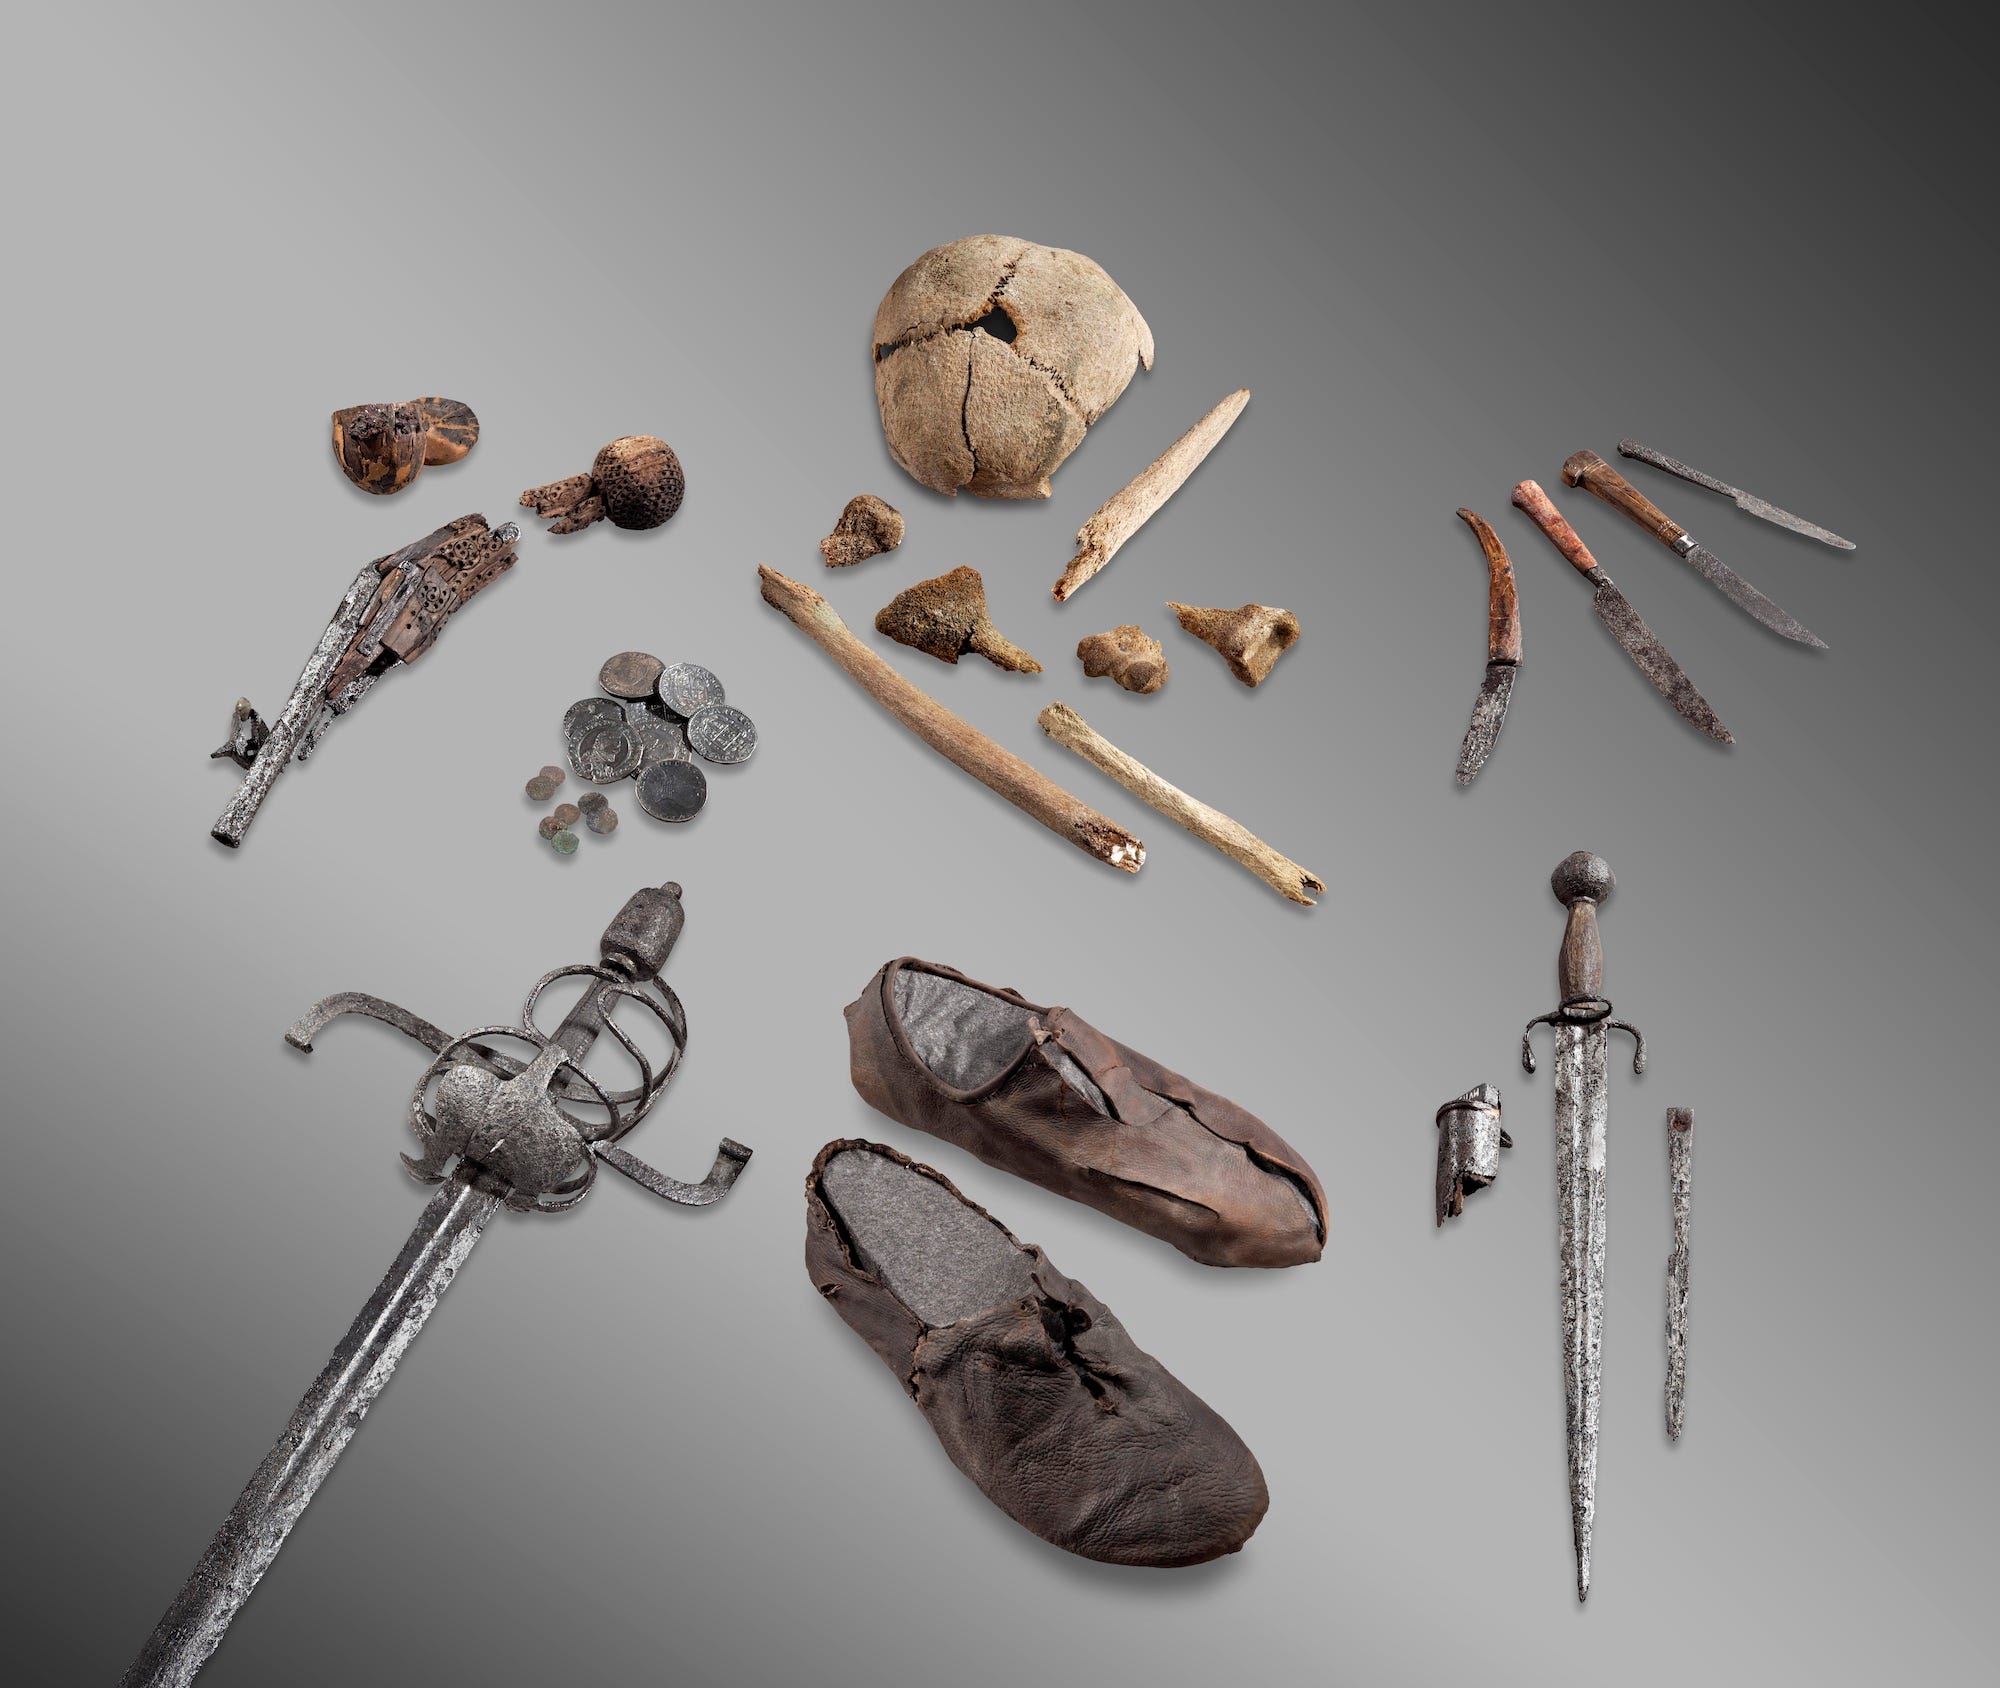 Schädelkappe, kleine Knochen, rostige Messer, Dolch, Schwert, Münzen, kaputte Pistole und abgenutzte Lederschuhe, ausgebreitet auf grauem Hintergrund